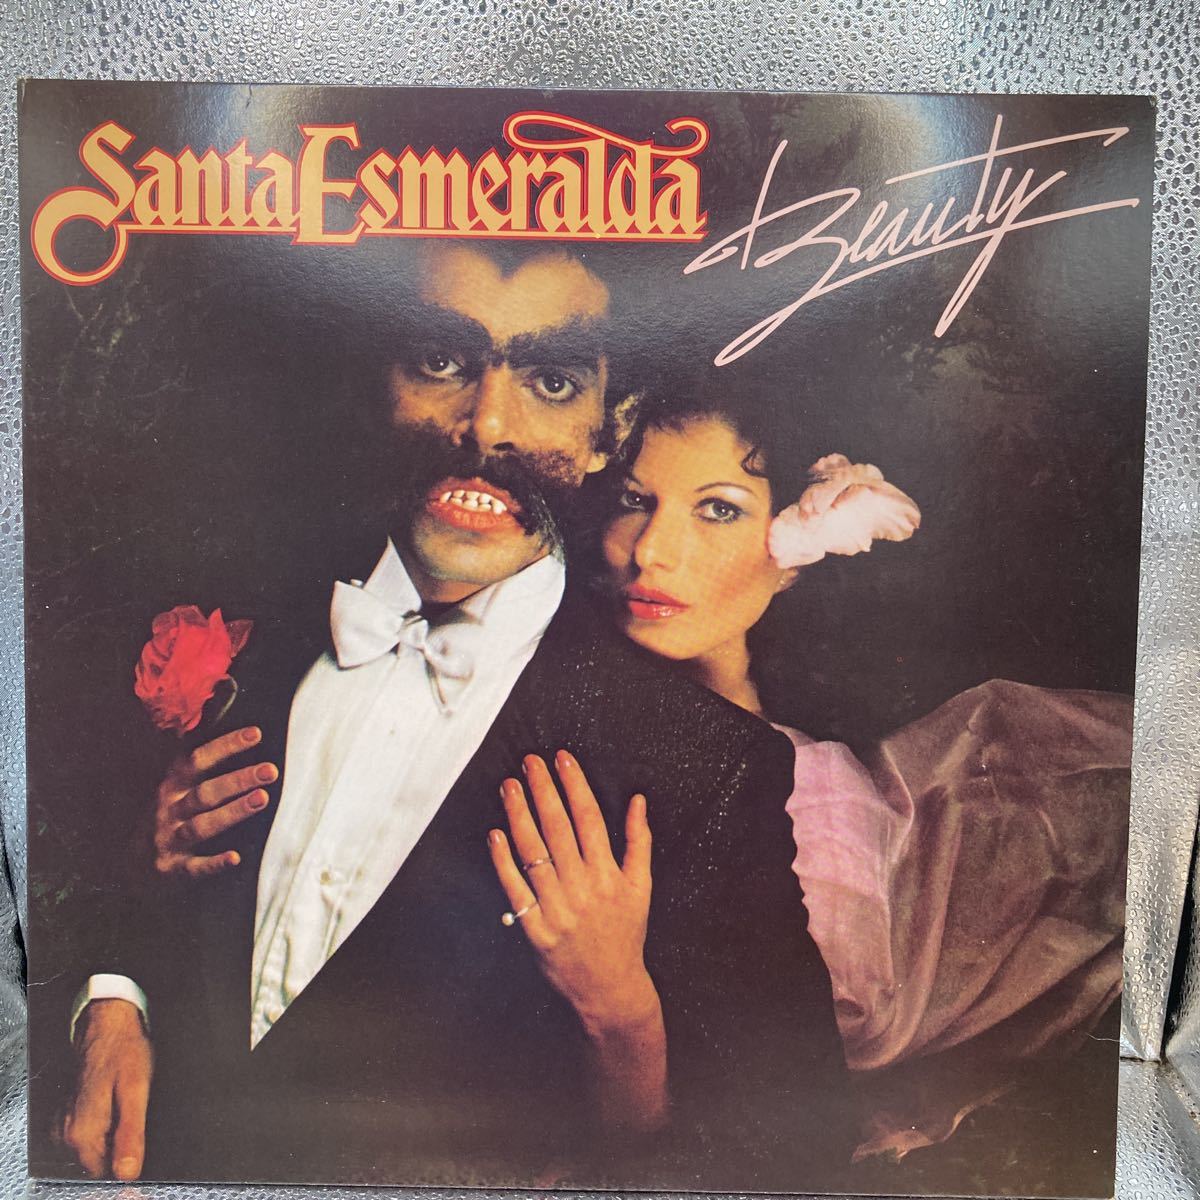 再生良好 US盤 LP SANTA ESMERALDAサンタ・エスメラルダ/BEAUTY NBLP 7109_画像1